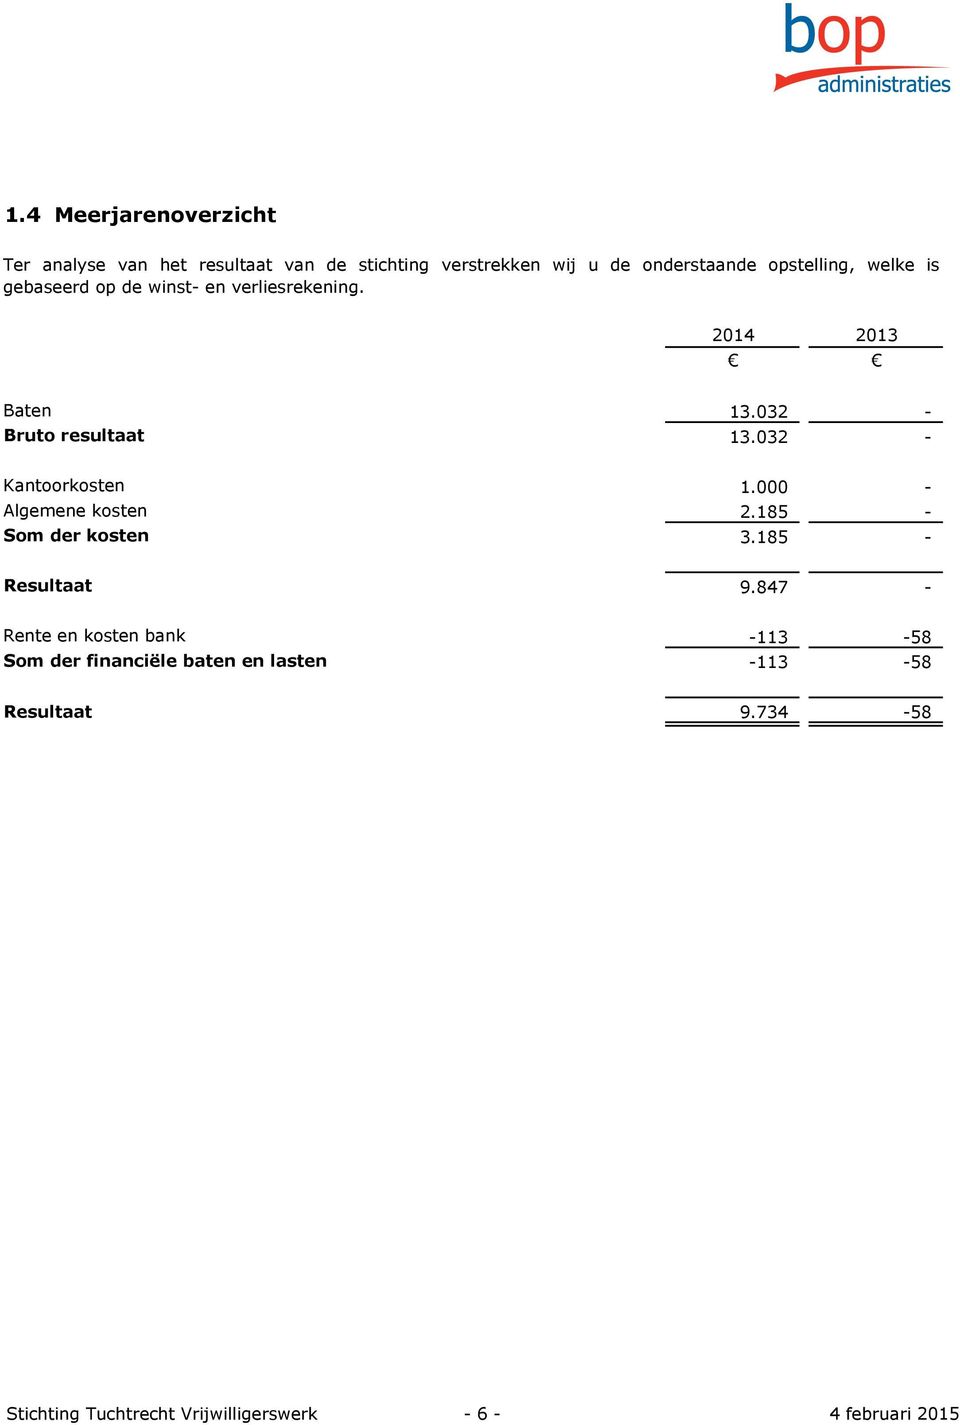 032 - Kantoorkosten 1.000 - Algemene kosten 2.185 - Som der kosten 3.185 - Resultaat 9.